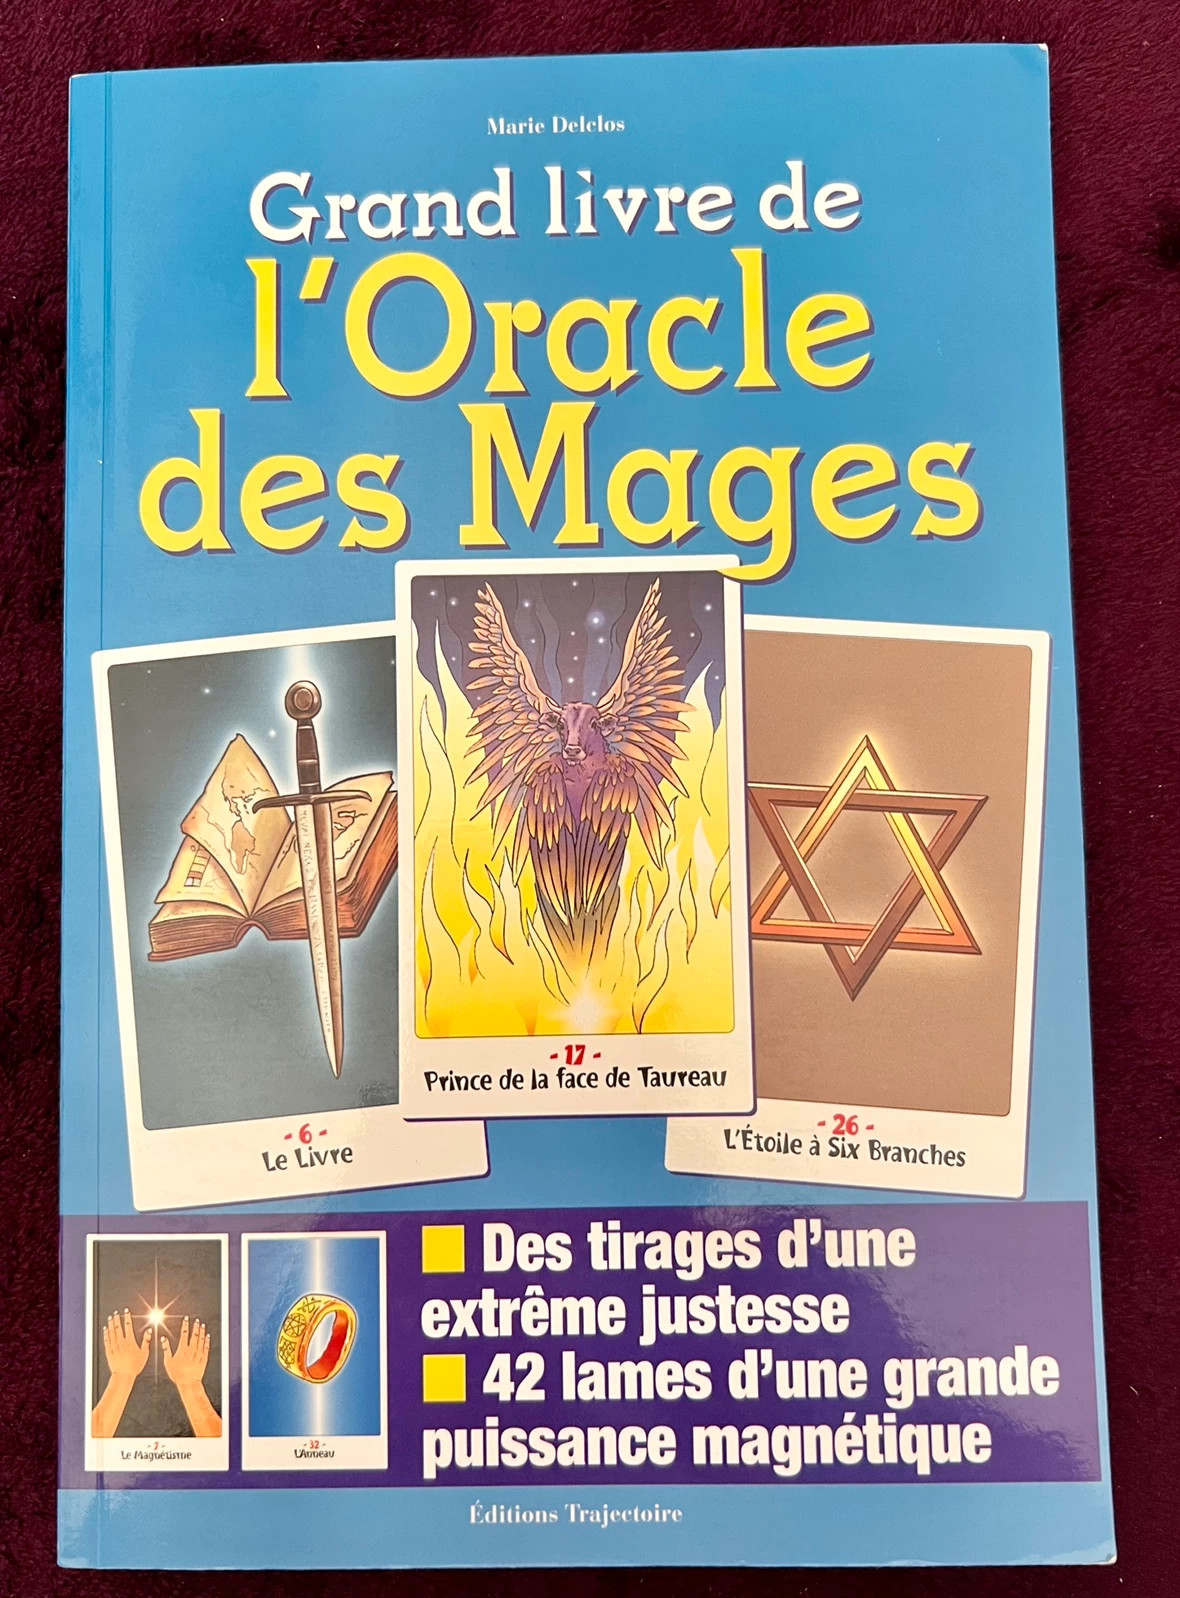 Le grand livre de l'Oracle des Miroirs